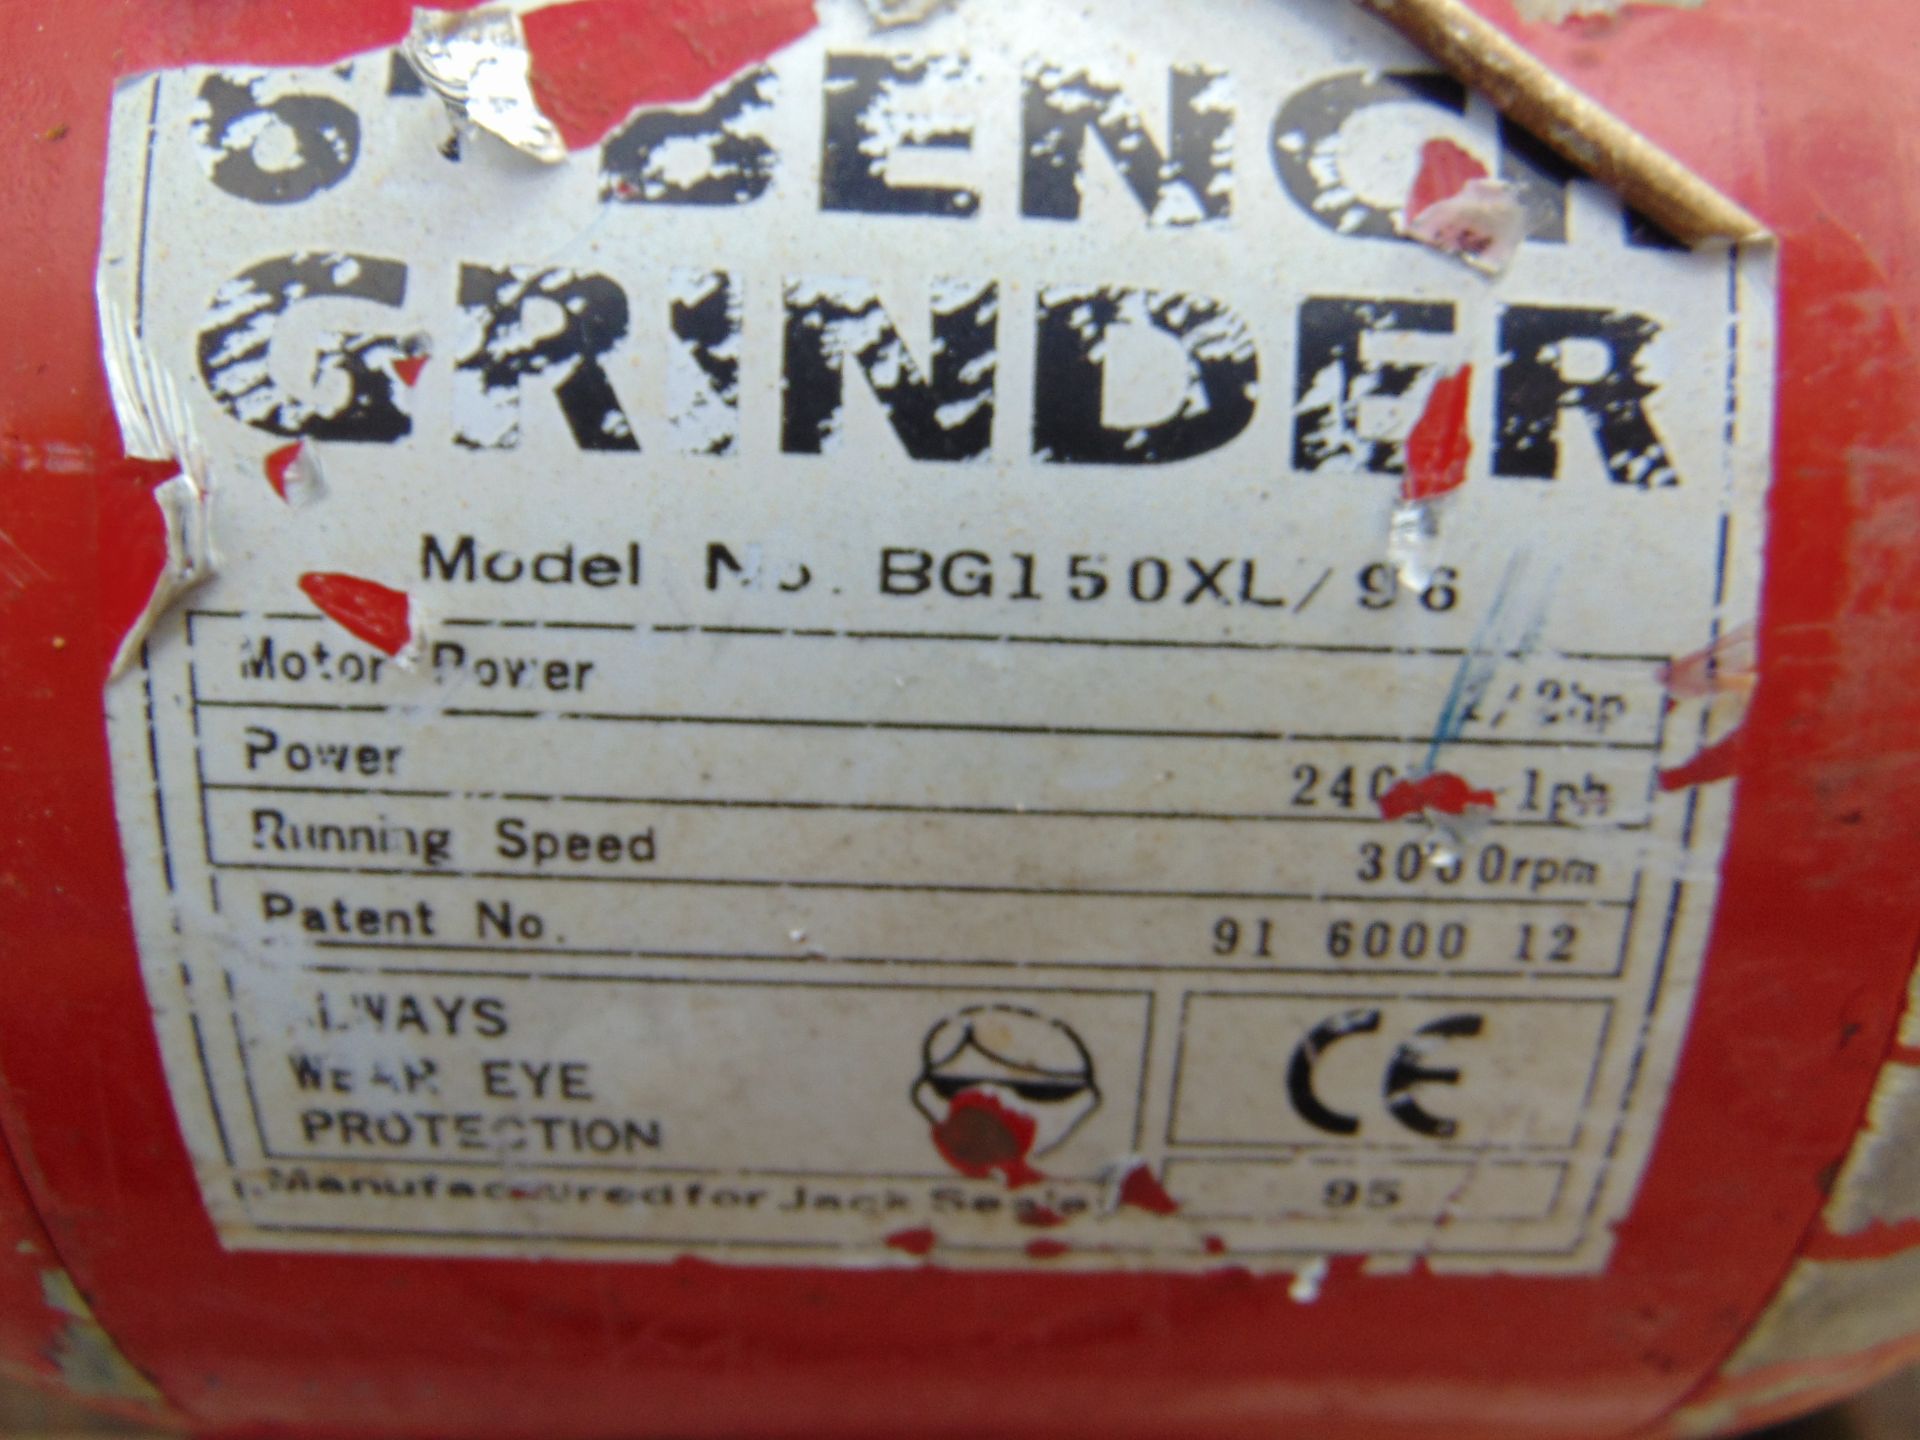 Sealey BG150XL/96 Bench Grinder - Image 3 of 3